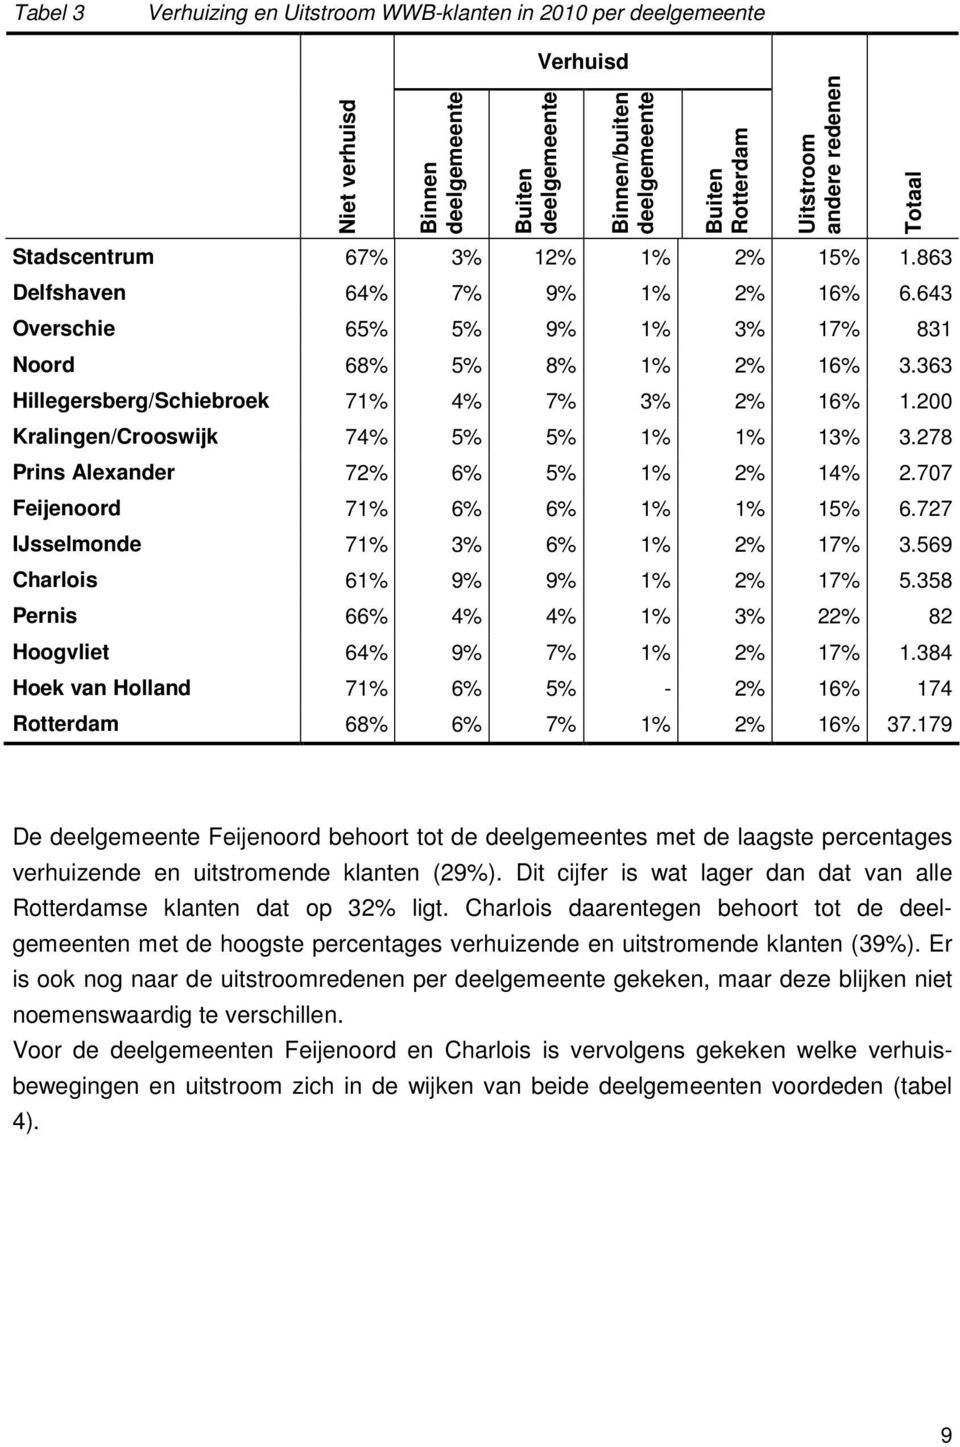 200 Kralingen/Crooswijk 74% 5% 5% 1% 1% 13% 3.278 Prins Alexander 72% 6% 5% 1% 2% 14% 2.707 Feijenoord 71% 6% 6% 1% 1% 15% 6.727 IJsselmonde 71% 3% 6% 1% 2% 17% 3.569 Charlois 61% 9% 9% 1% 2% 17% 5.